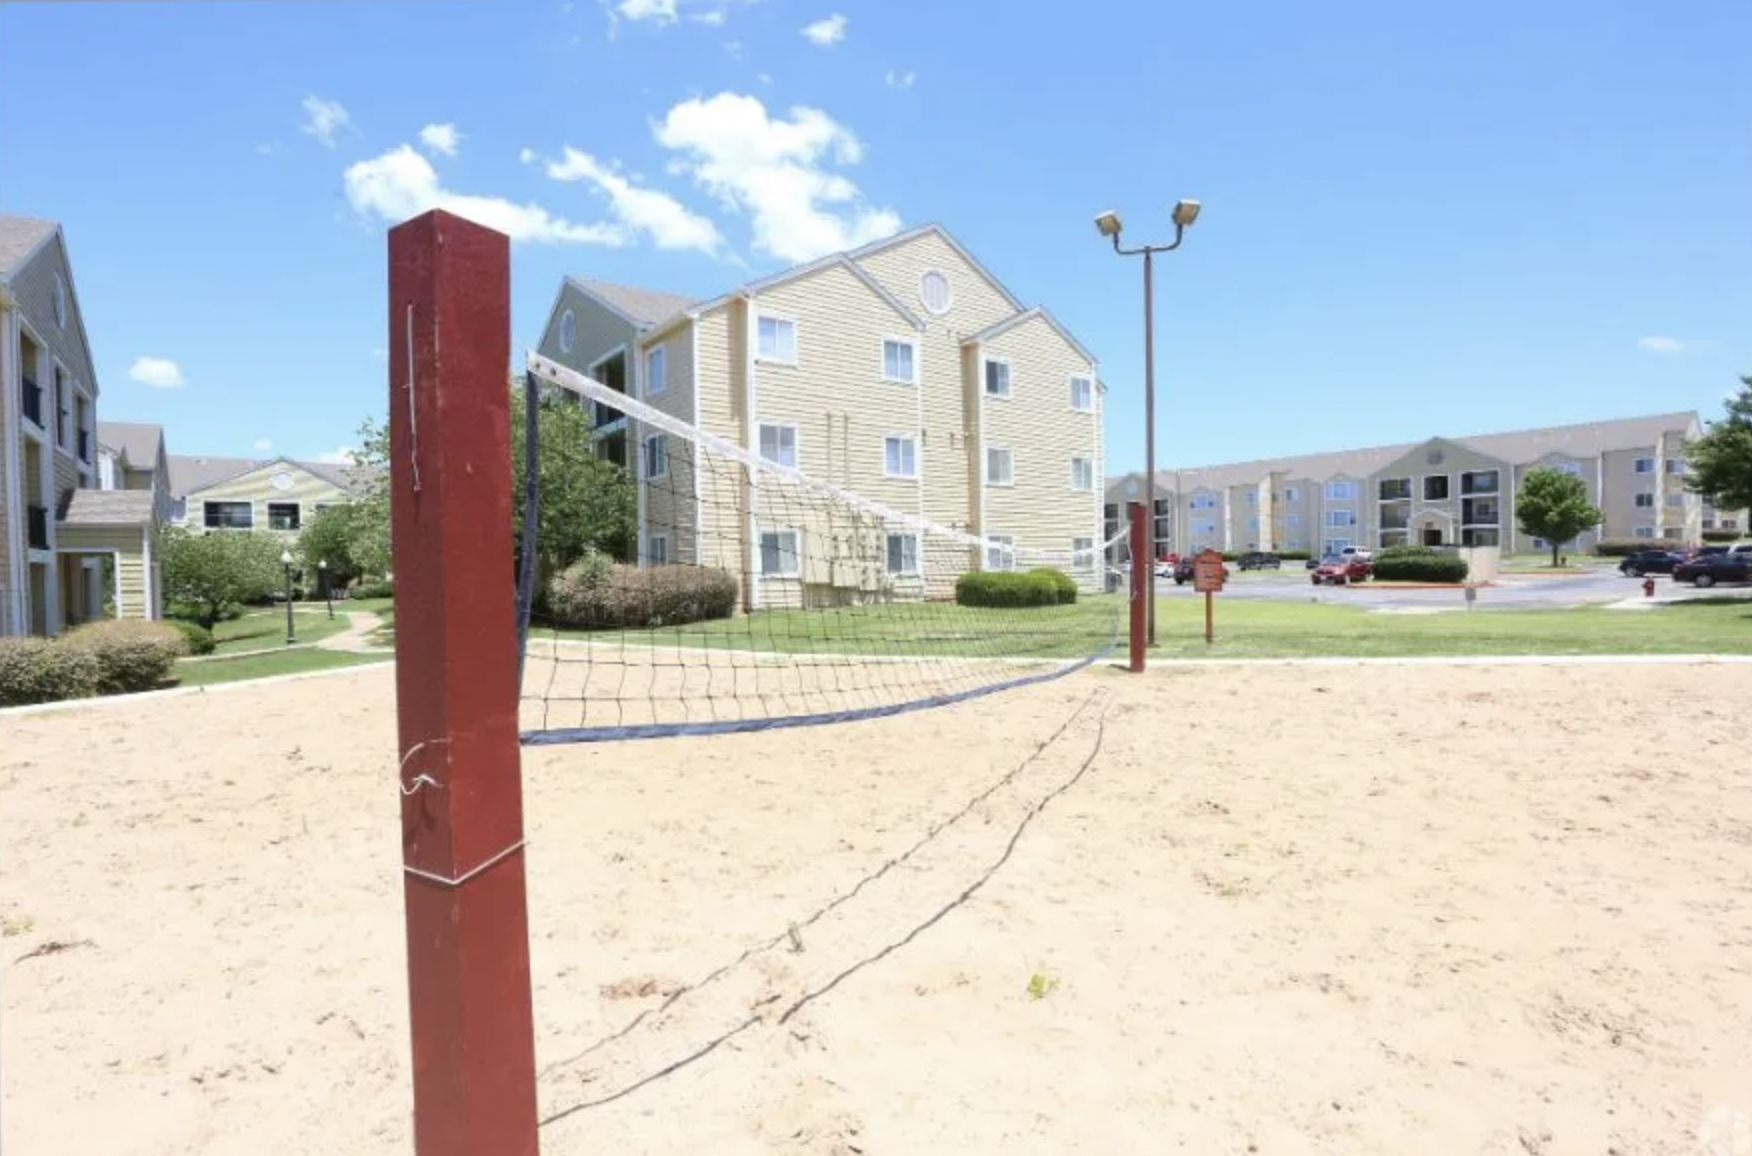 The Overlook Luxury Sand Volleyball Net